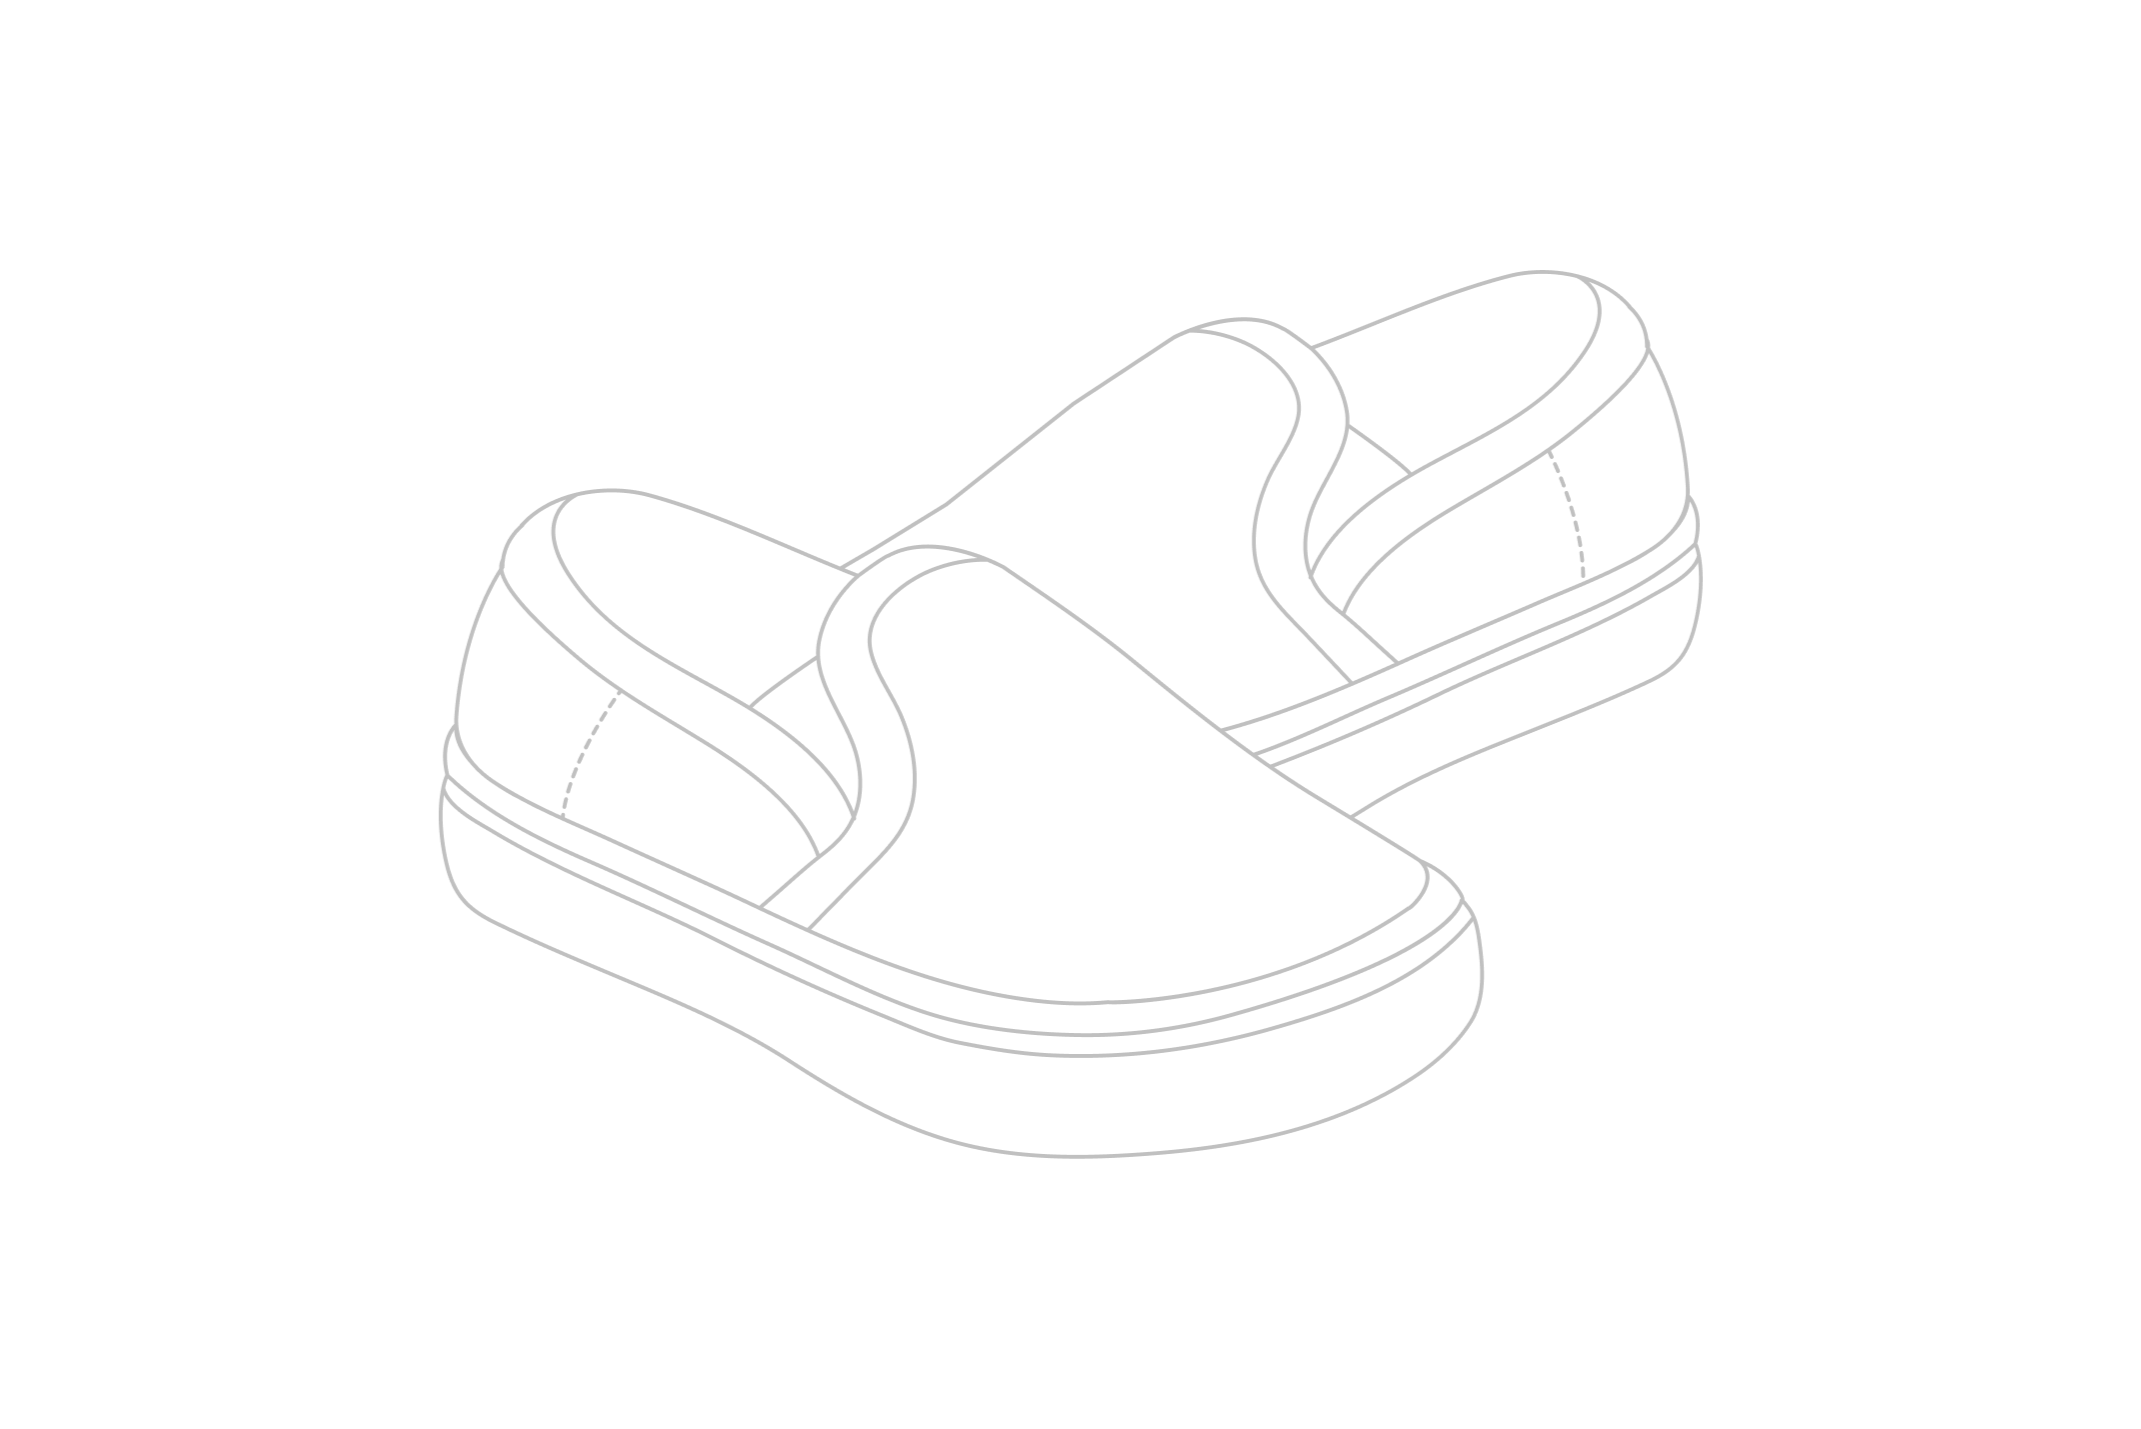 A black outline illustration of a shoe